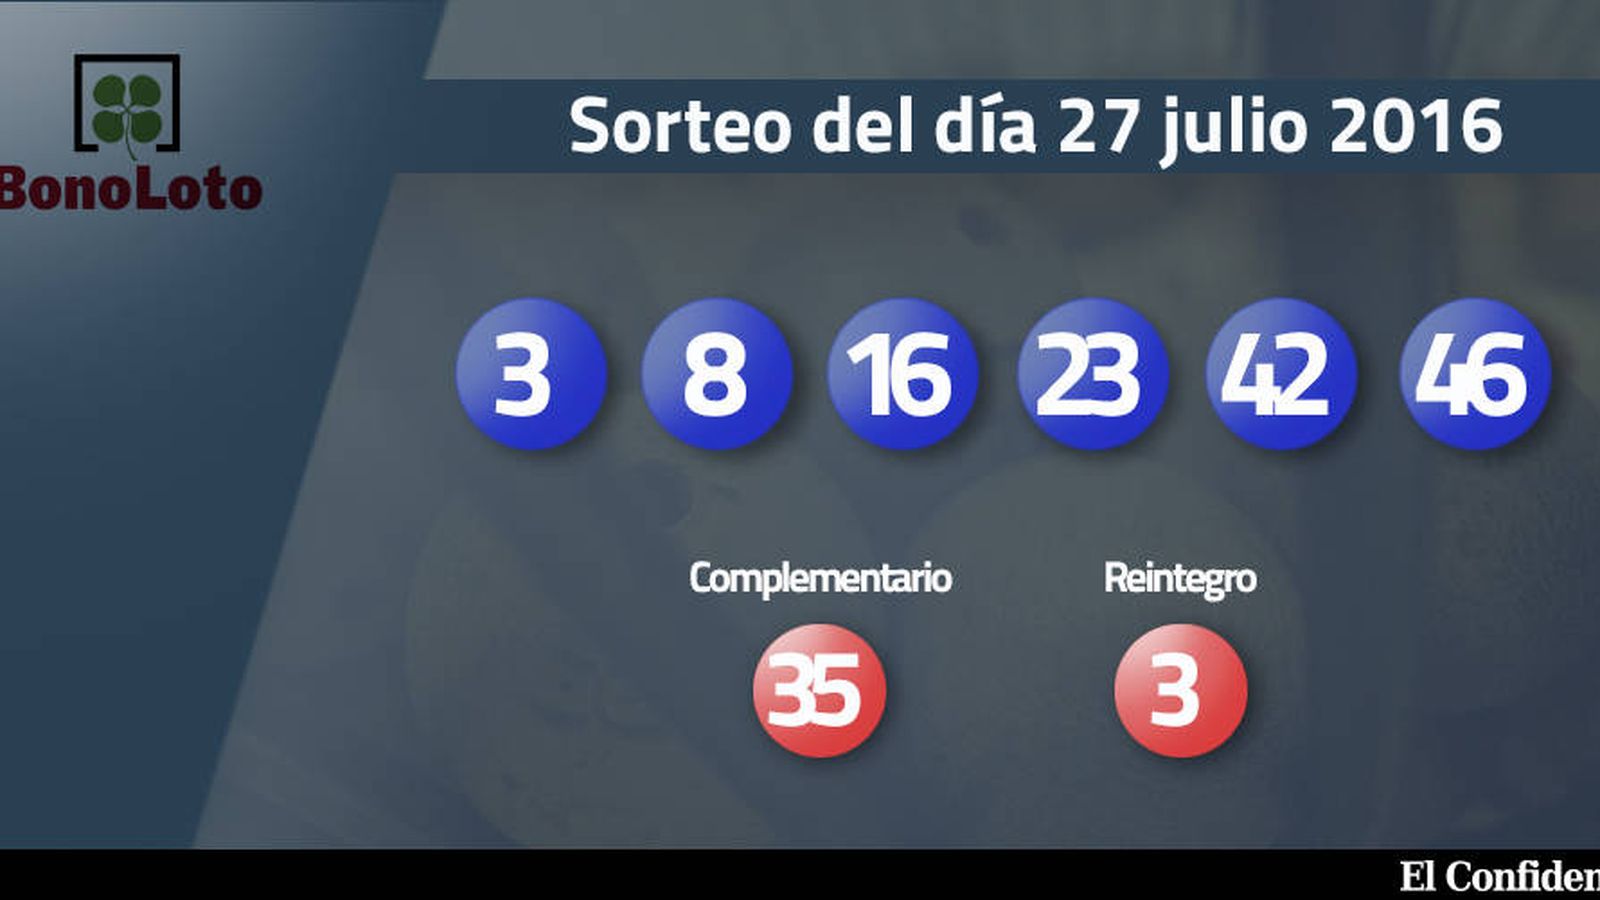 Foto: Resultados del sorteo de la Bonoloto del 27 julio 2016 (EC)